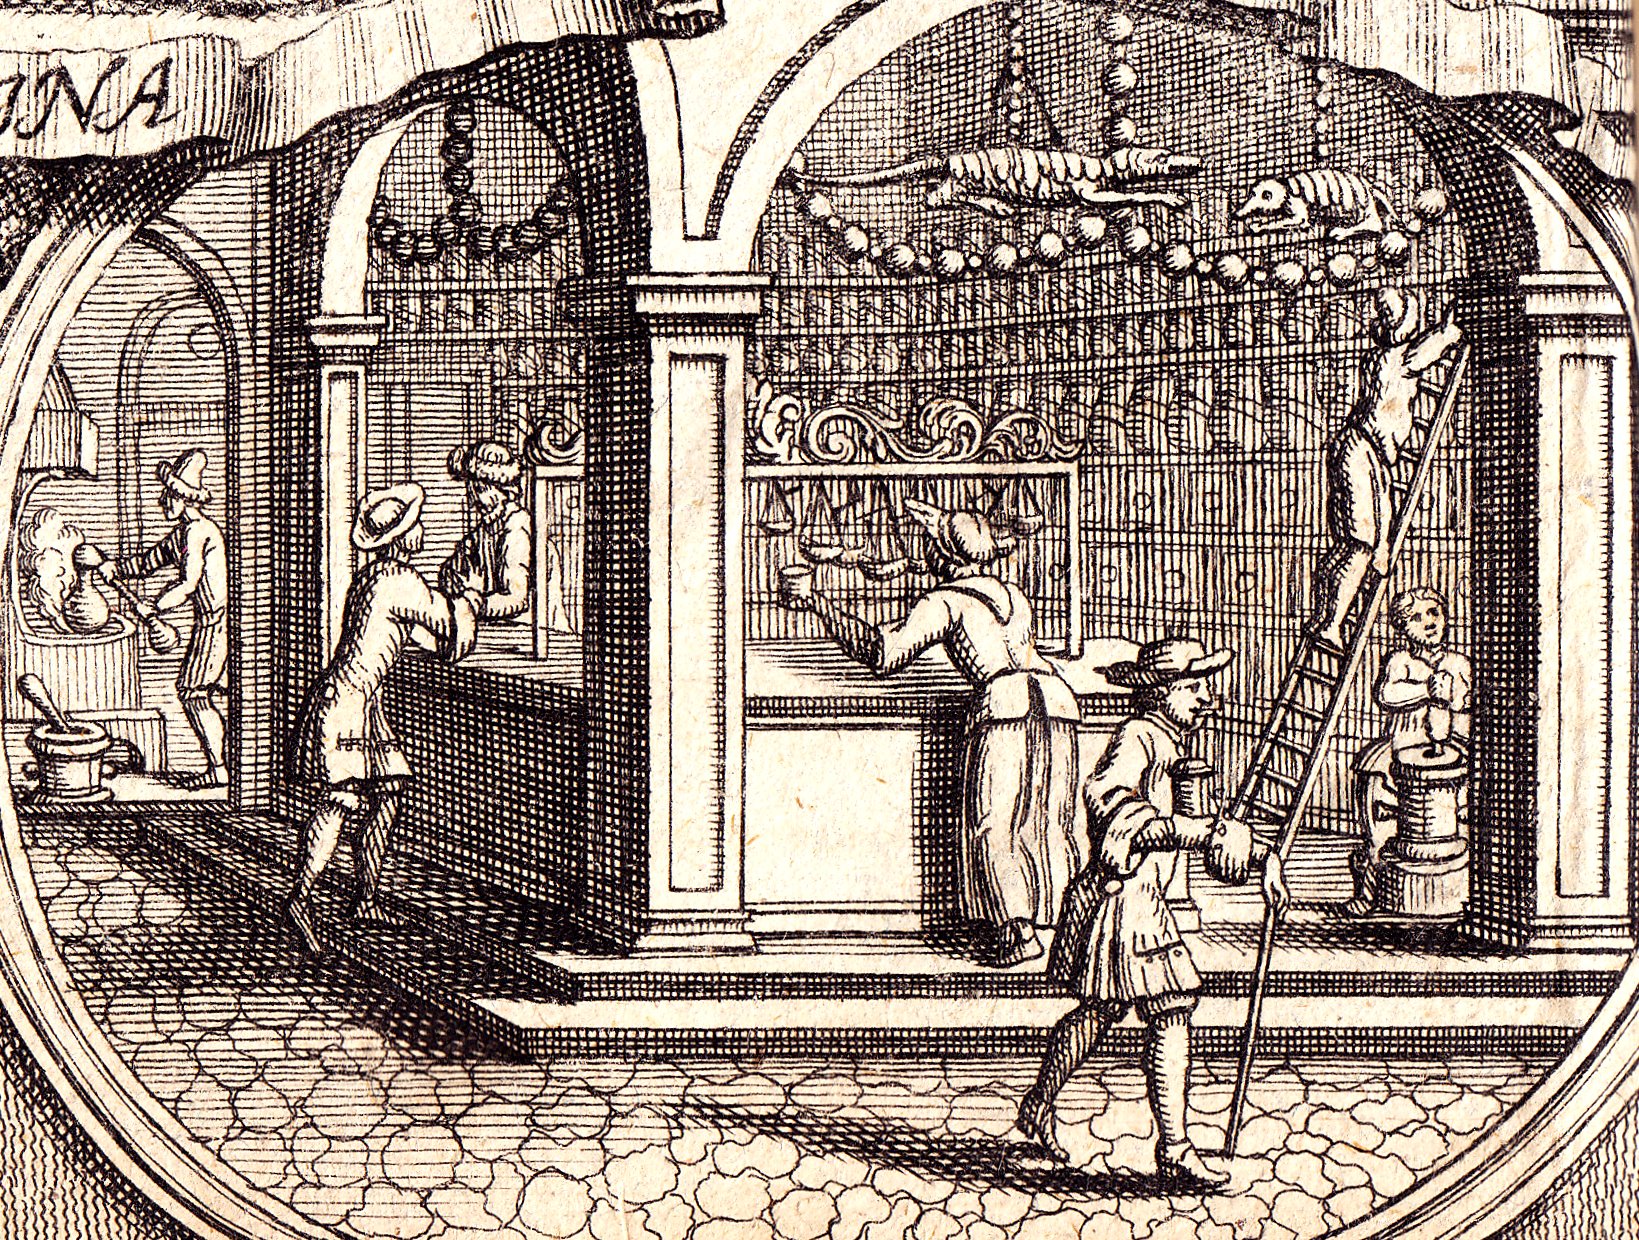 Abb. 1: Blick in eine Apotheke. Ausschnitt aus dem Titelblatt des Preußischen Medizinaledikts von 1704.